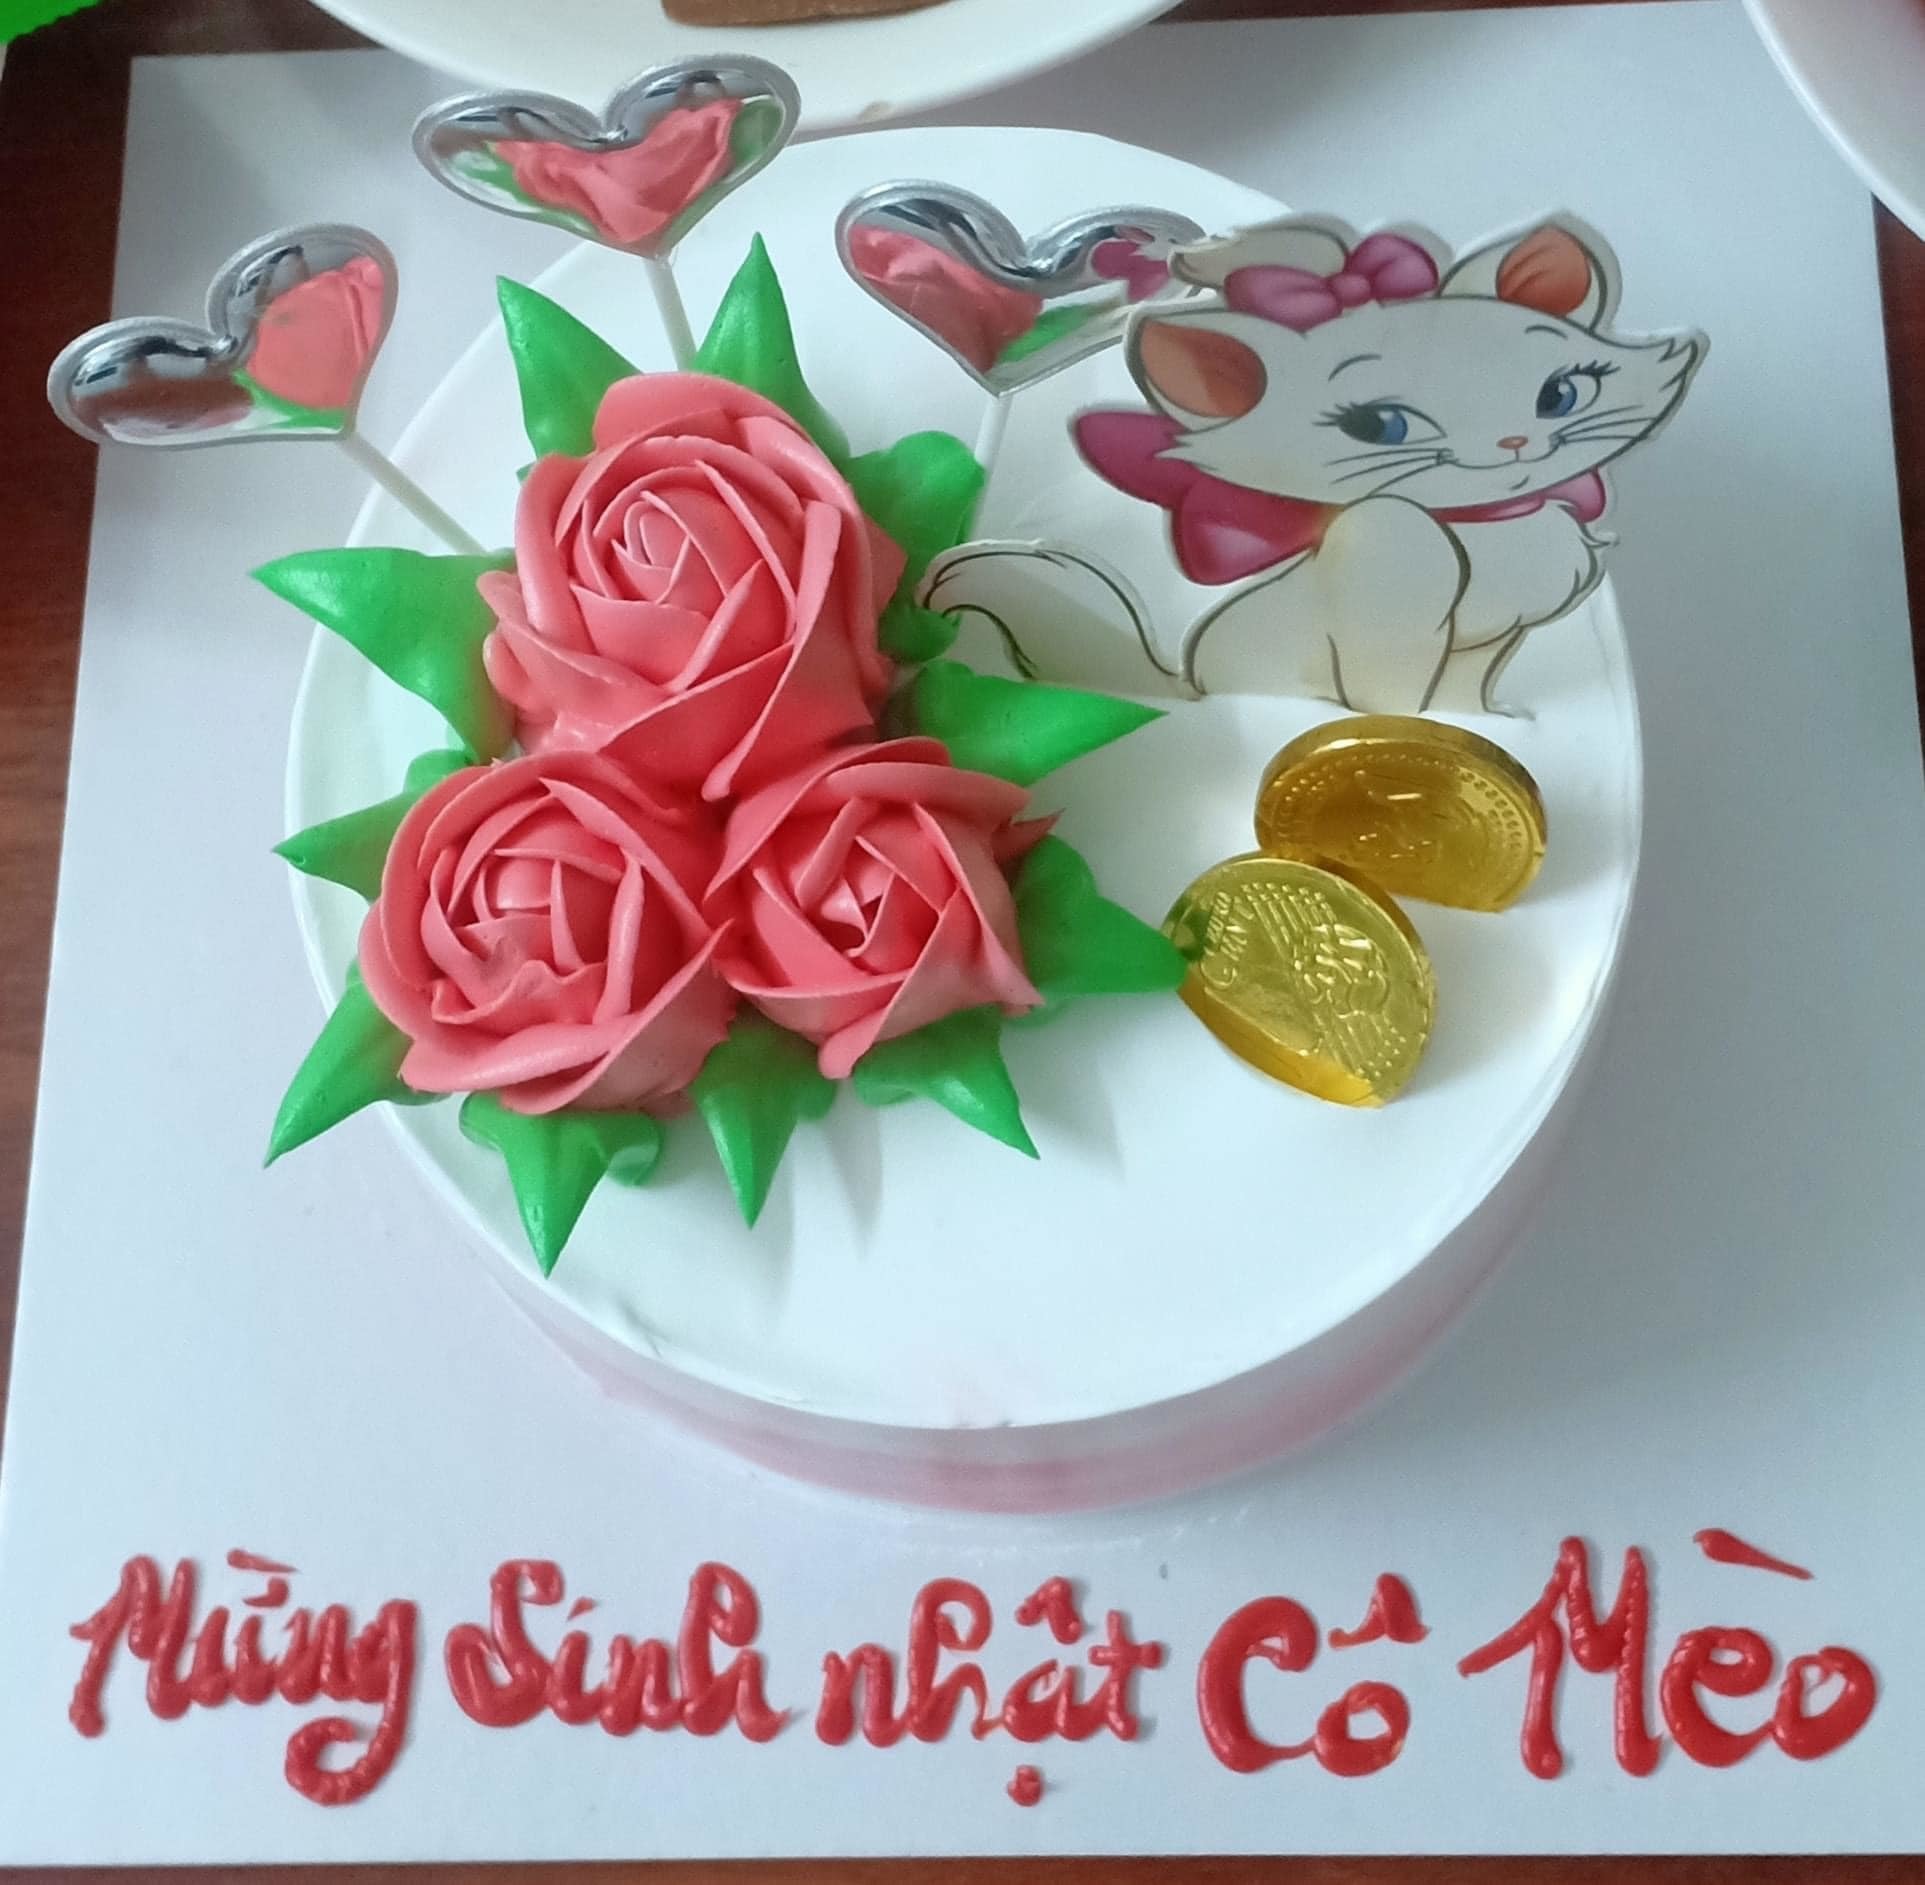 Bánh sinh nhật tạo hình mix 4 vị trang trí bằng chú mèo con dễ thương Mẫu  45893  FRIENDSHIP CAKES  GIFT